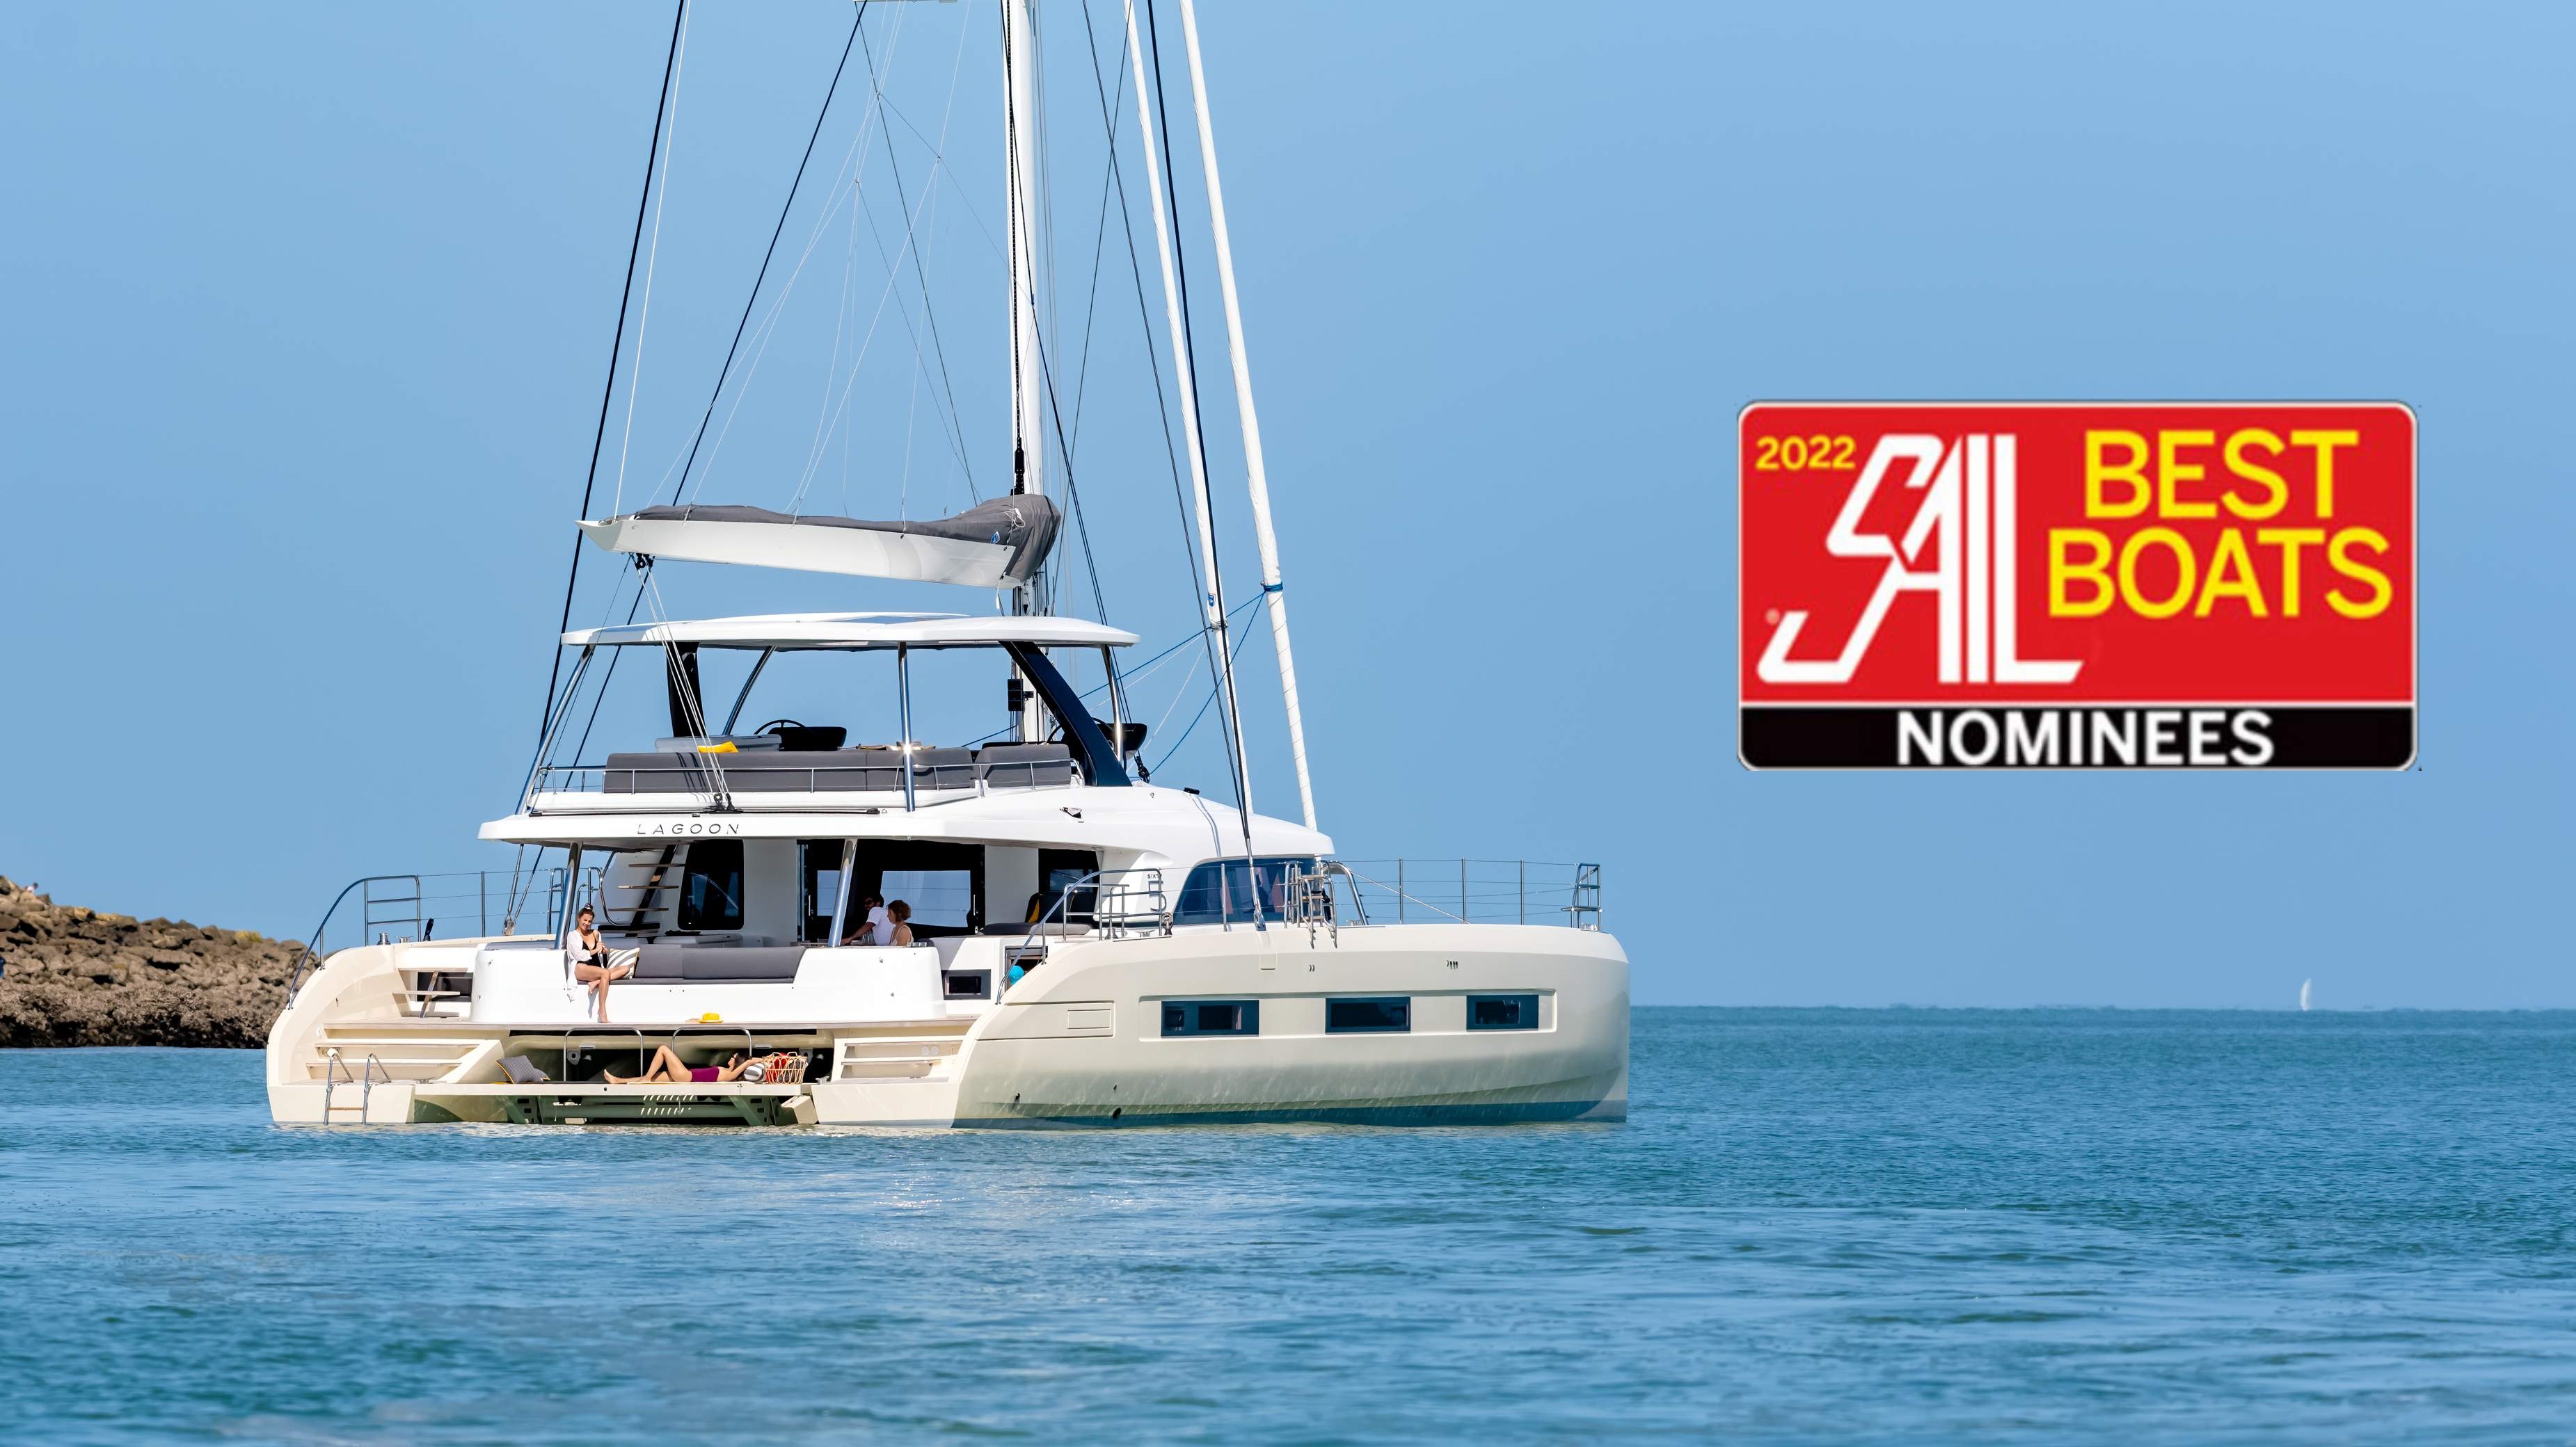 Lagoon Sixty 5, Sail Best Boat 2022 Ödülüne Koşuyor